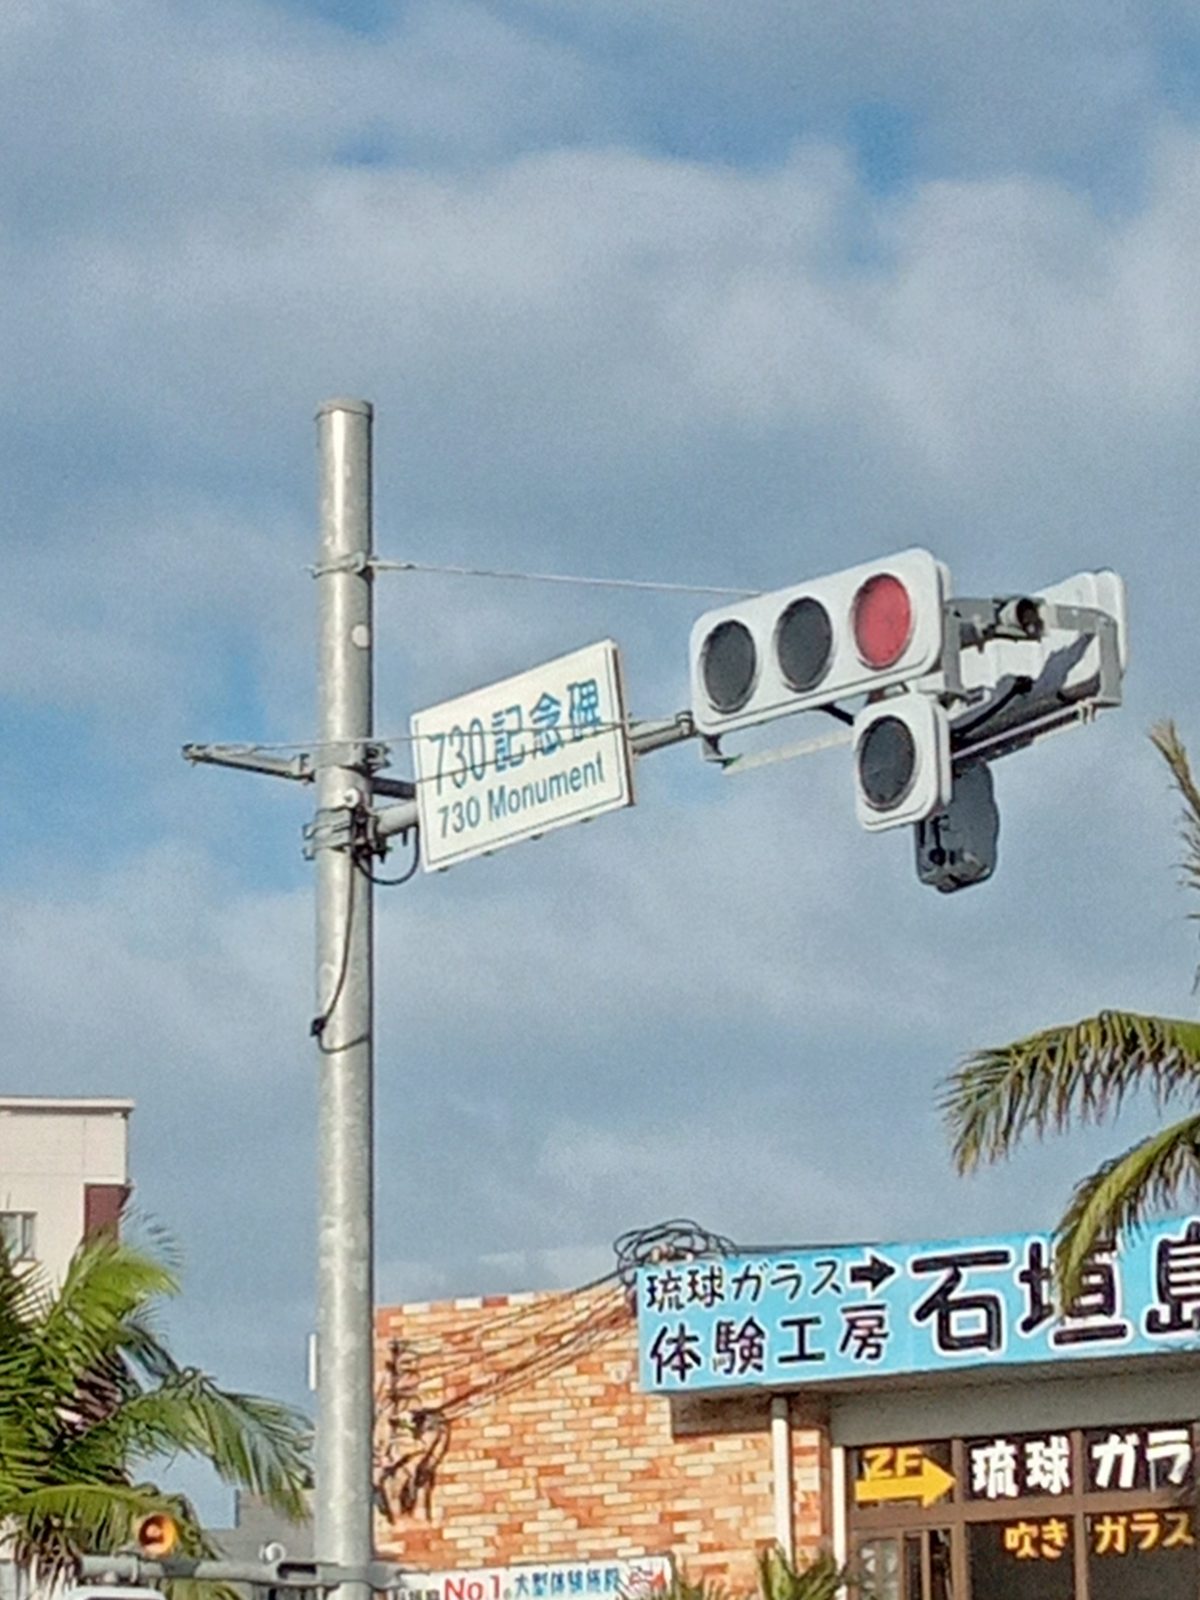 ボーダーツーリズム（国境観光）沖縄本島